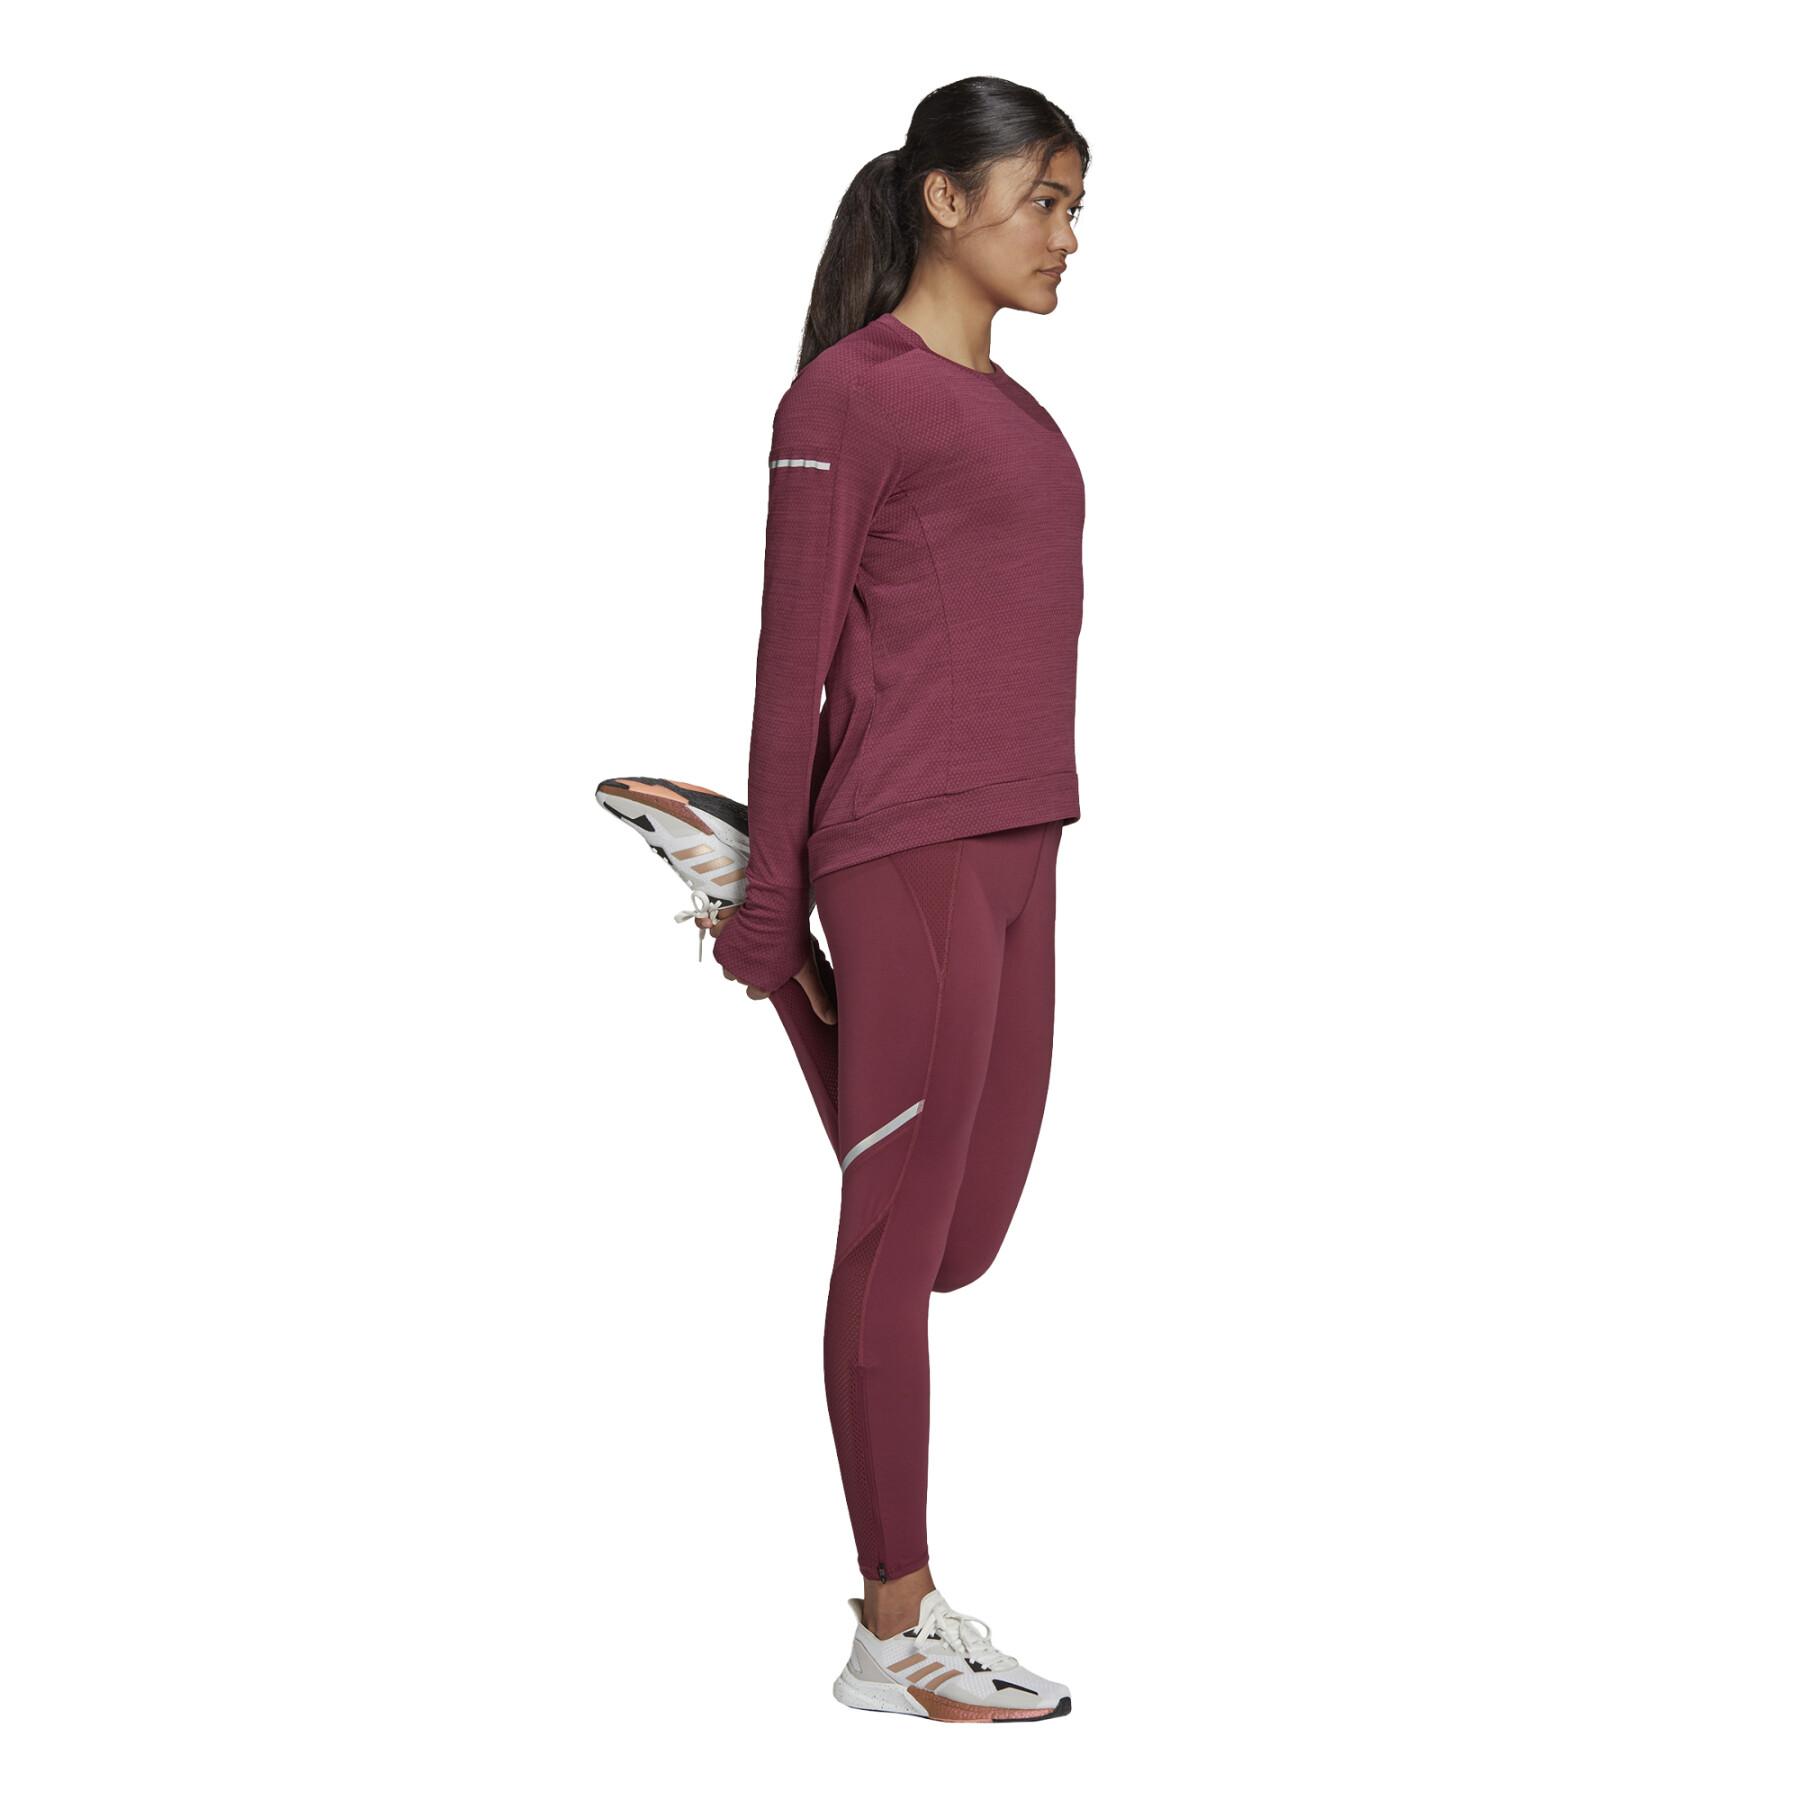 Camiseta de manga larga para mujer adidas Cooler Running